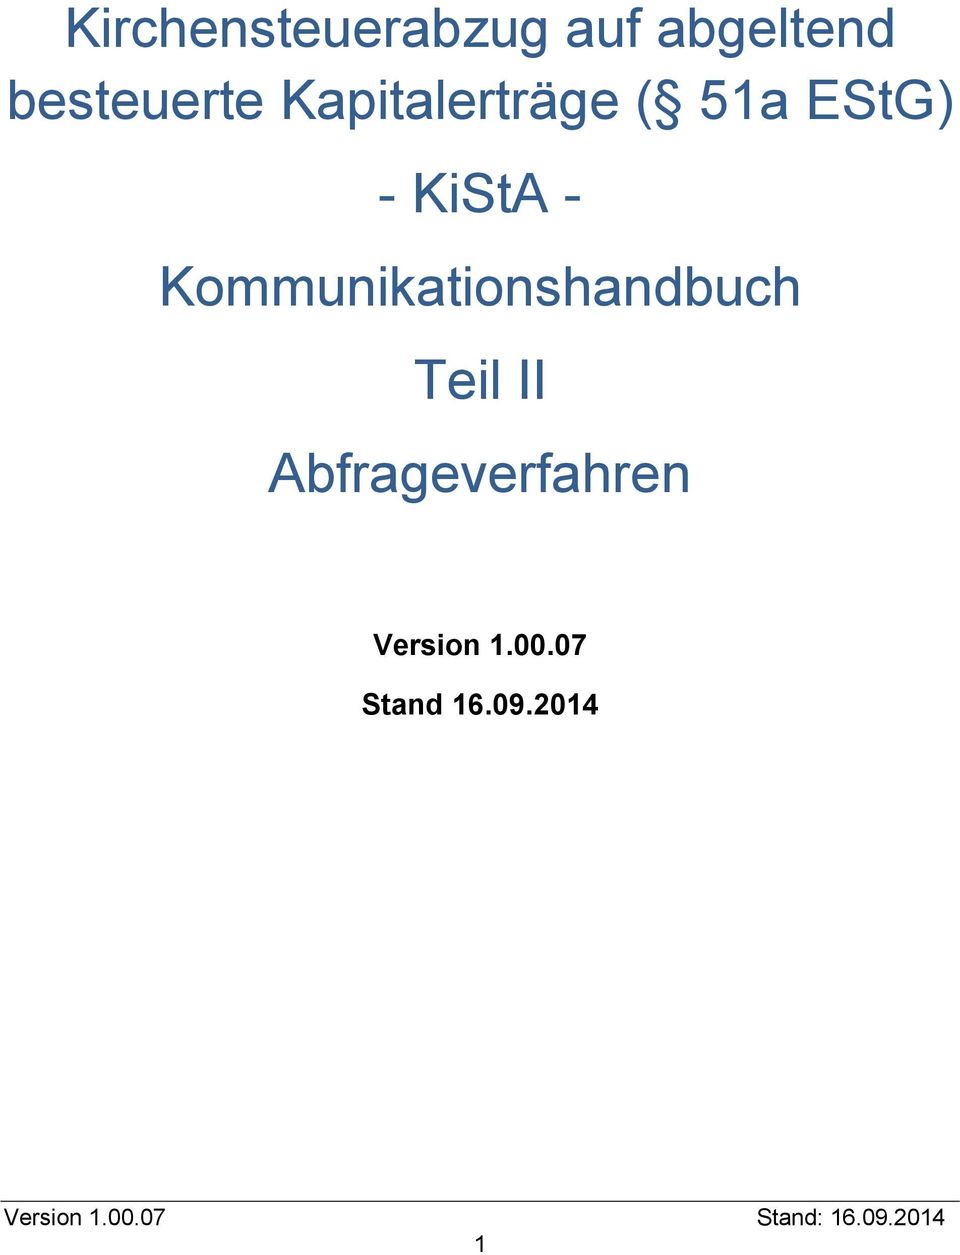 KiStA - Kommunikationshandbuch Teil II